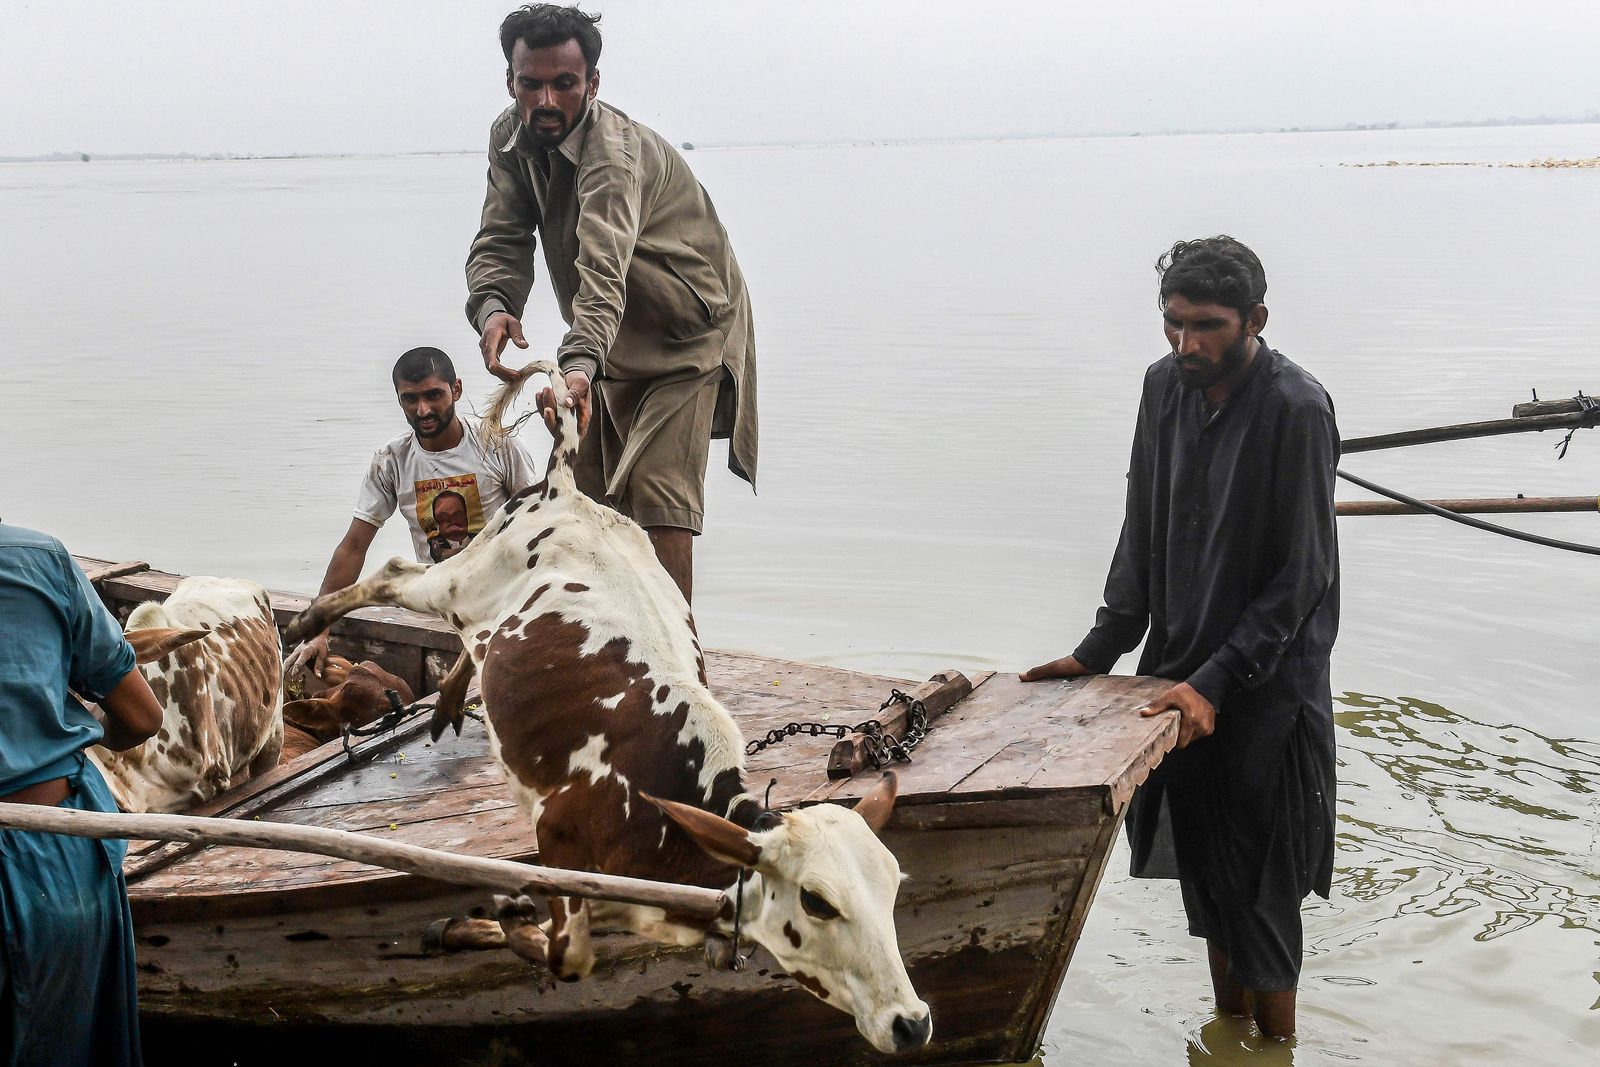 أشخاص عالقون يفرغون حمولة ماشية من قارب بعد إجلائهم من المناطق المتضررة جراء الفيضانات في سوكور بإقليم السند- 27 أغسطس 2022 - AFP